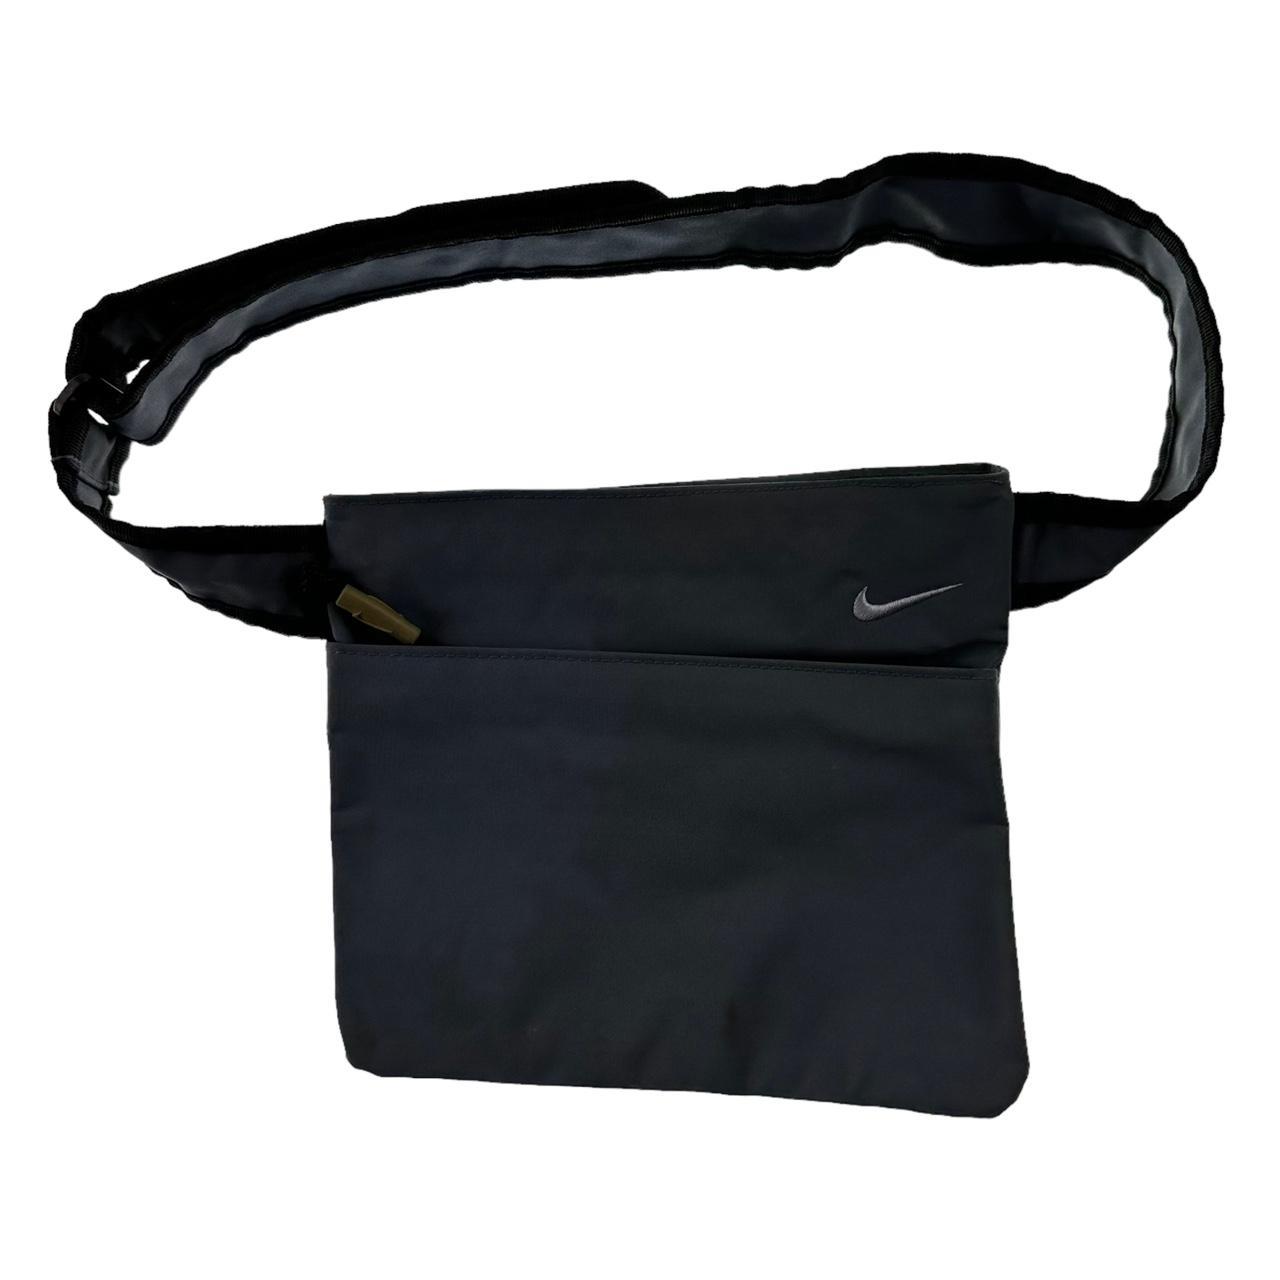 Vintage Nike shoulder bag Measurements: 9”... - Depop